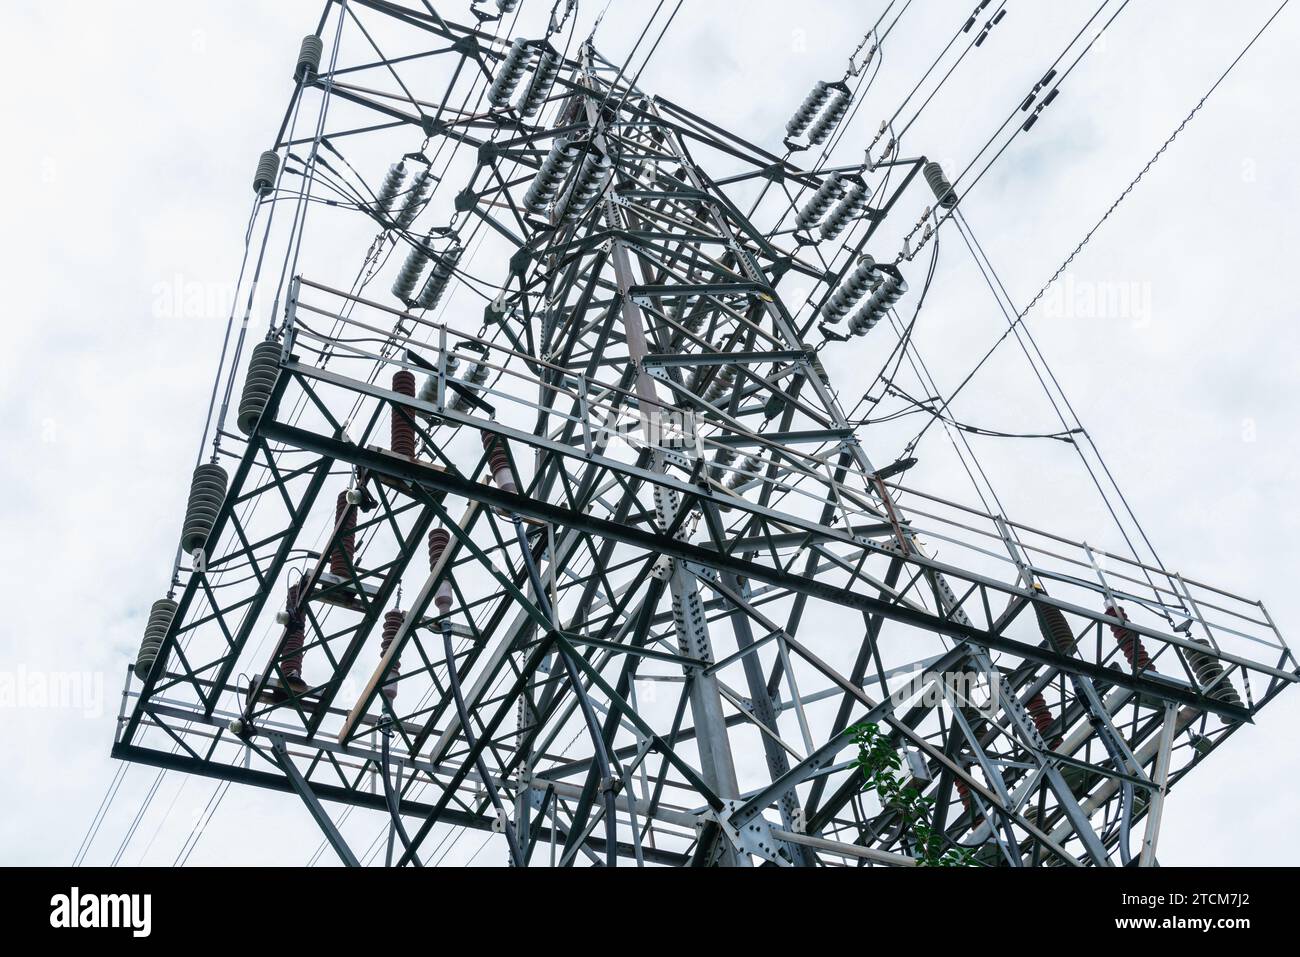 Ein Bild eines elektrischen Posts mit einer hohen Metallstruktur, die von verschiedenen elektrischen Drähten umgeben ist Stockfoto